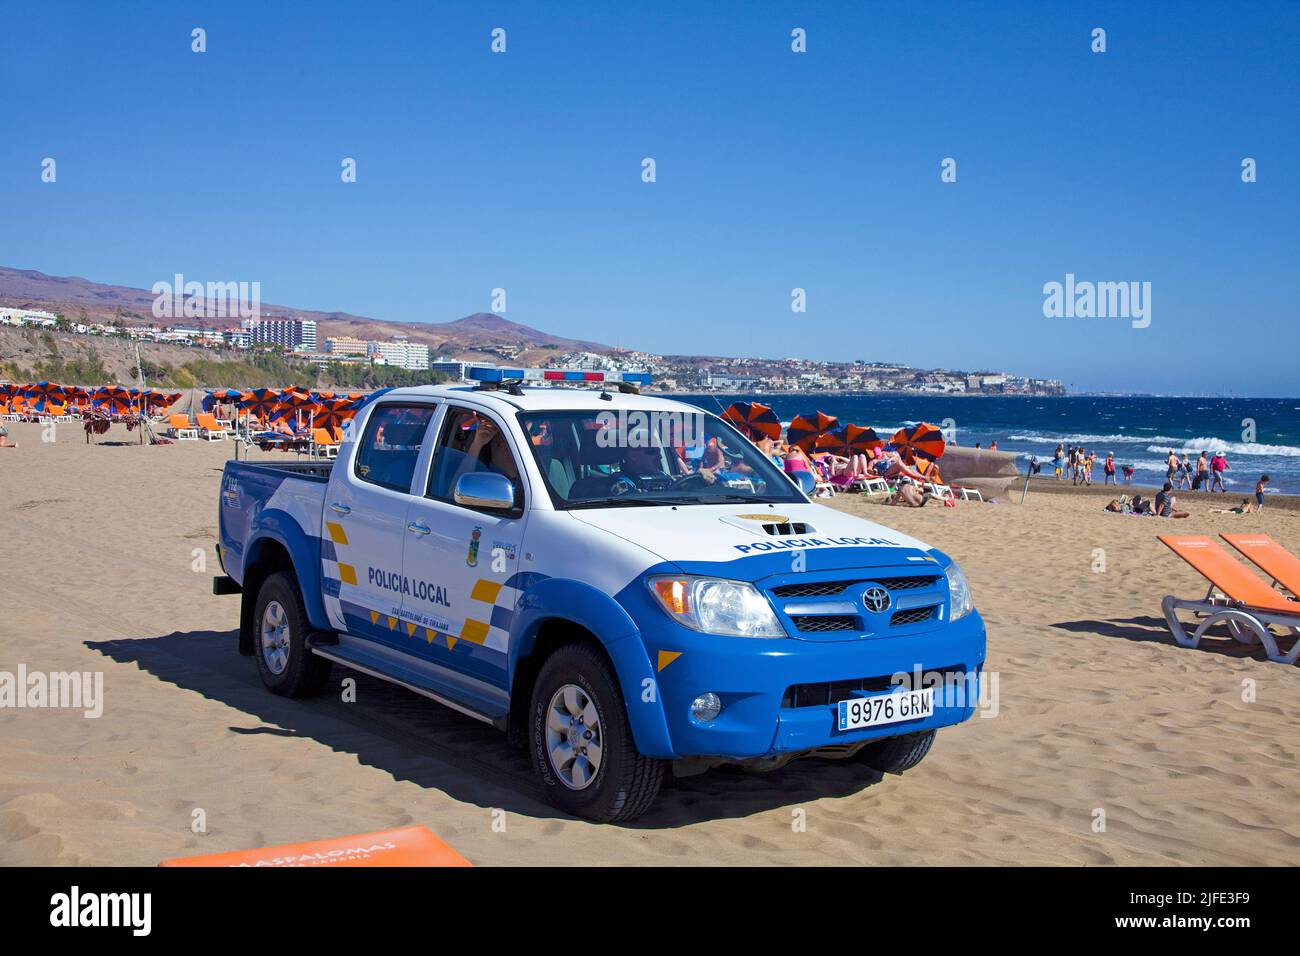 Patrouille de police sur la plage de Playa del Ingles, Grand Canary, îles Canaries, Espagne, Europe Banque D'Images